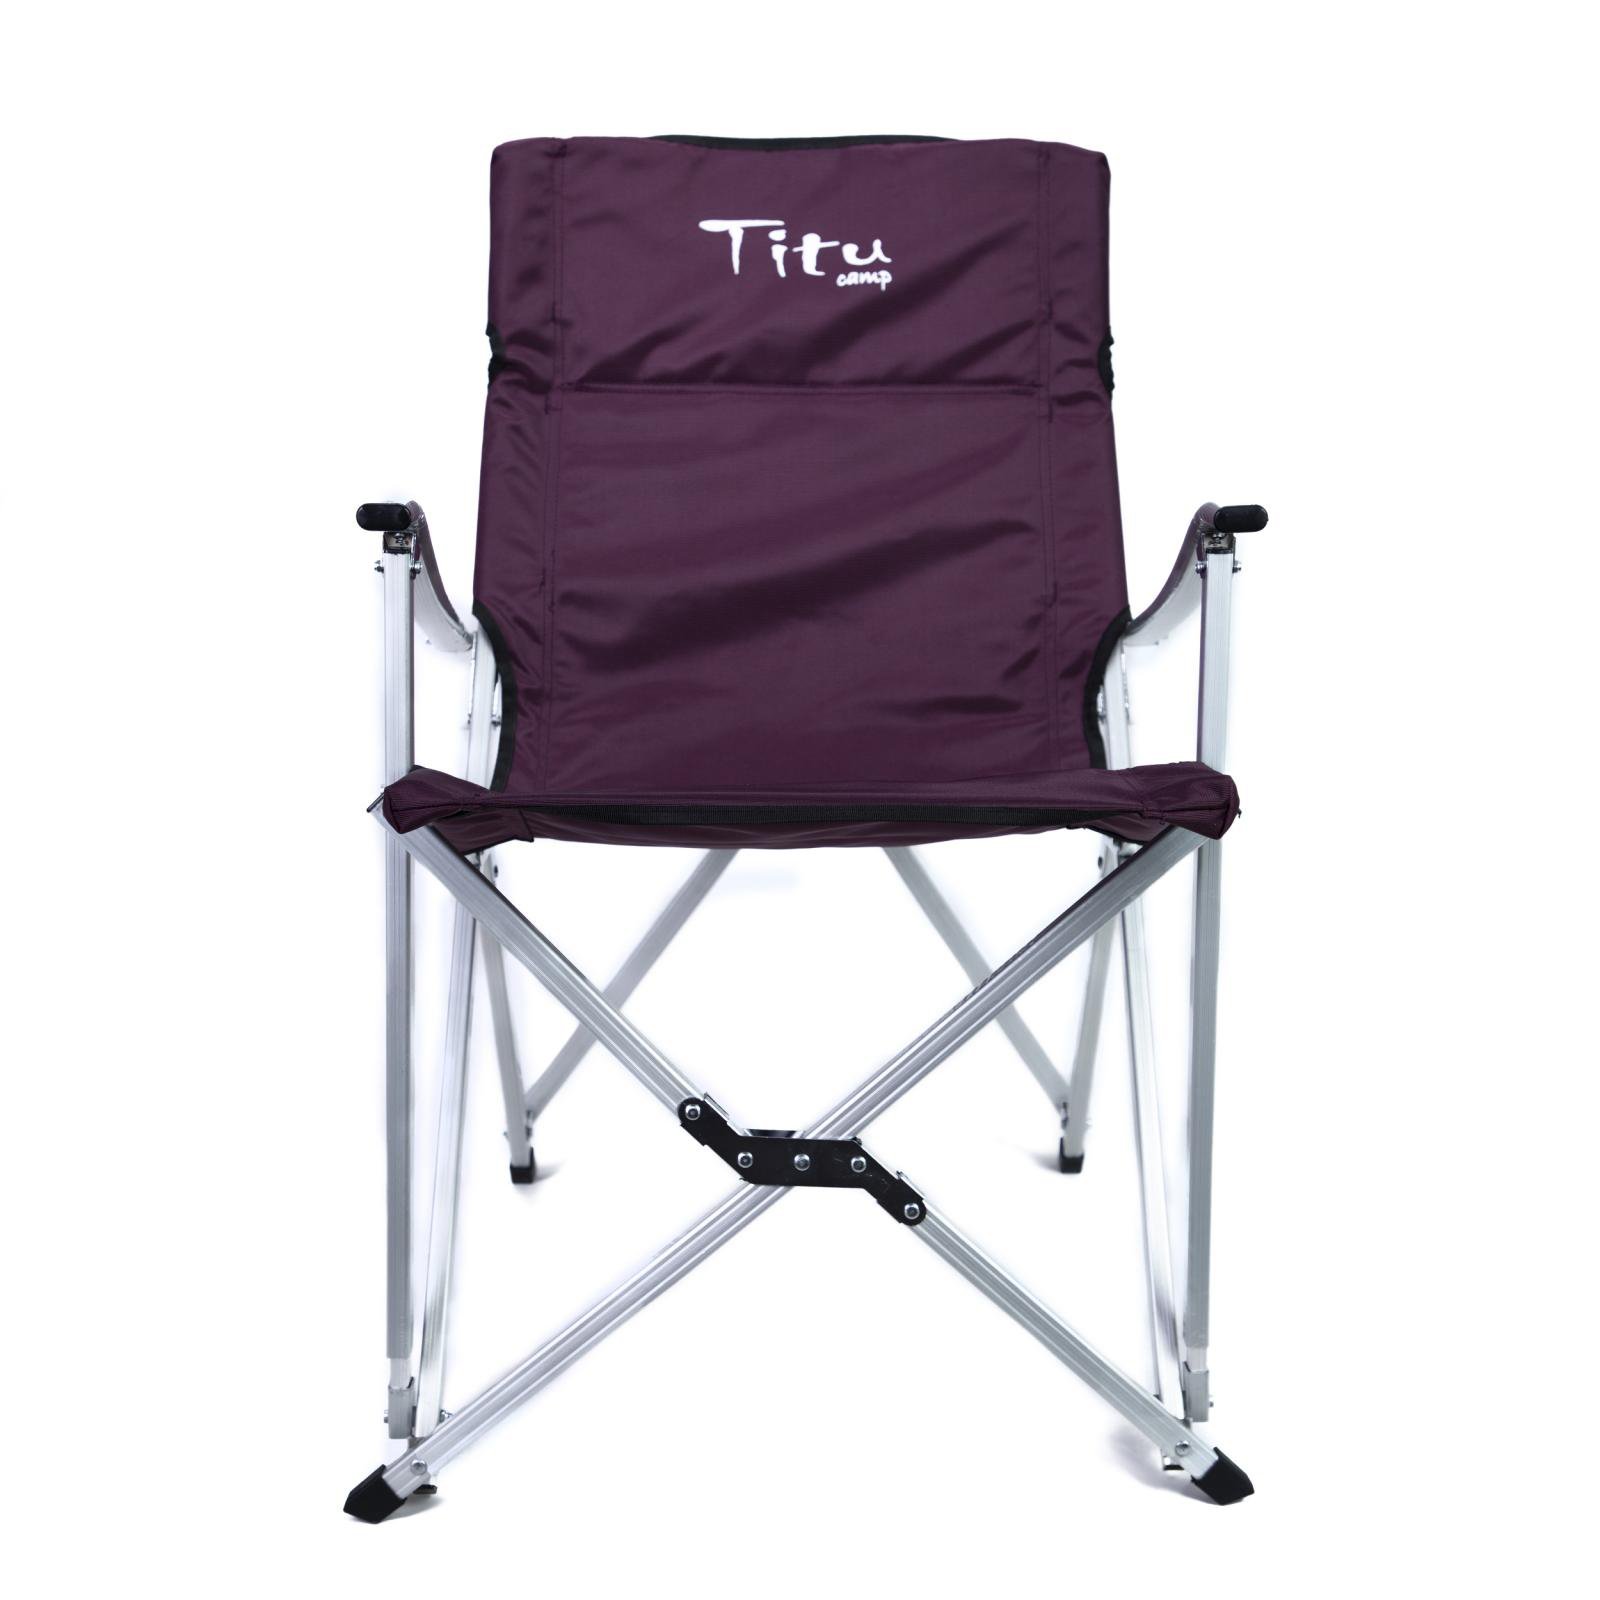 صندلی تاشو تیتوکمپ مدل TITU capm rest | کوه مان